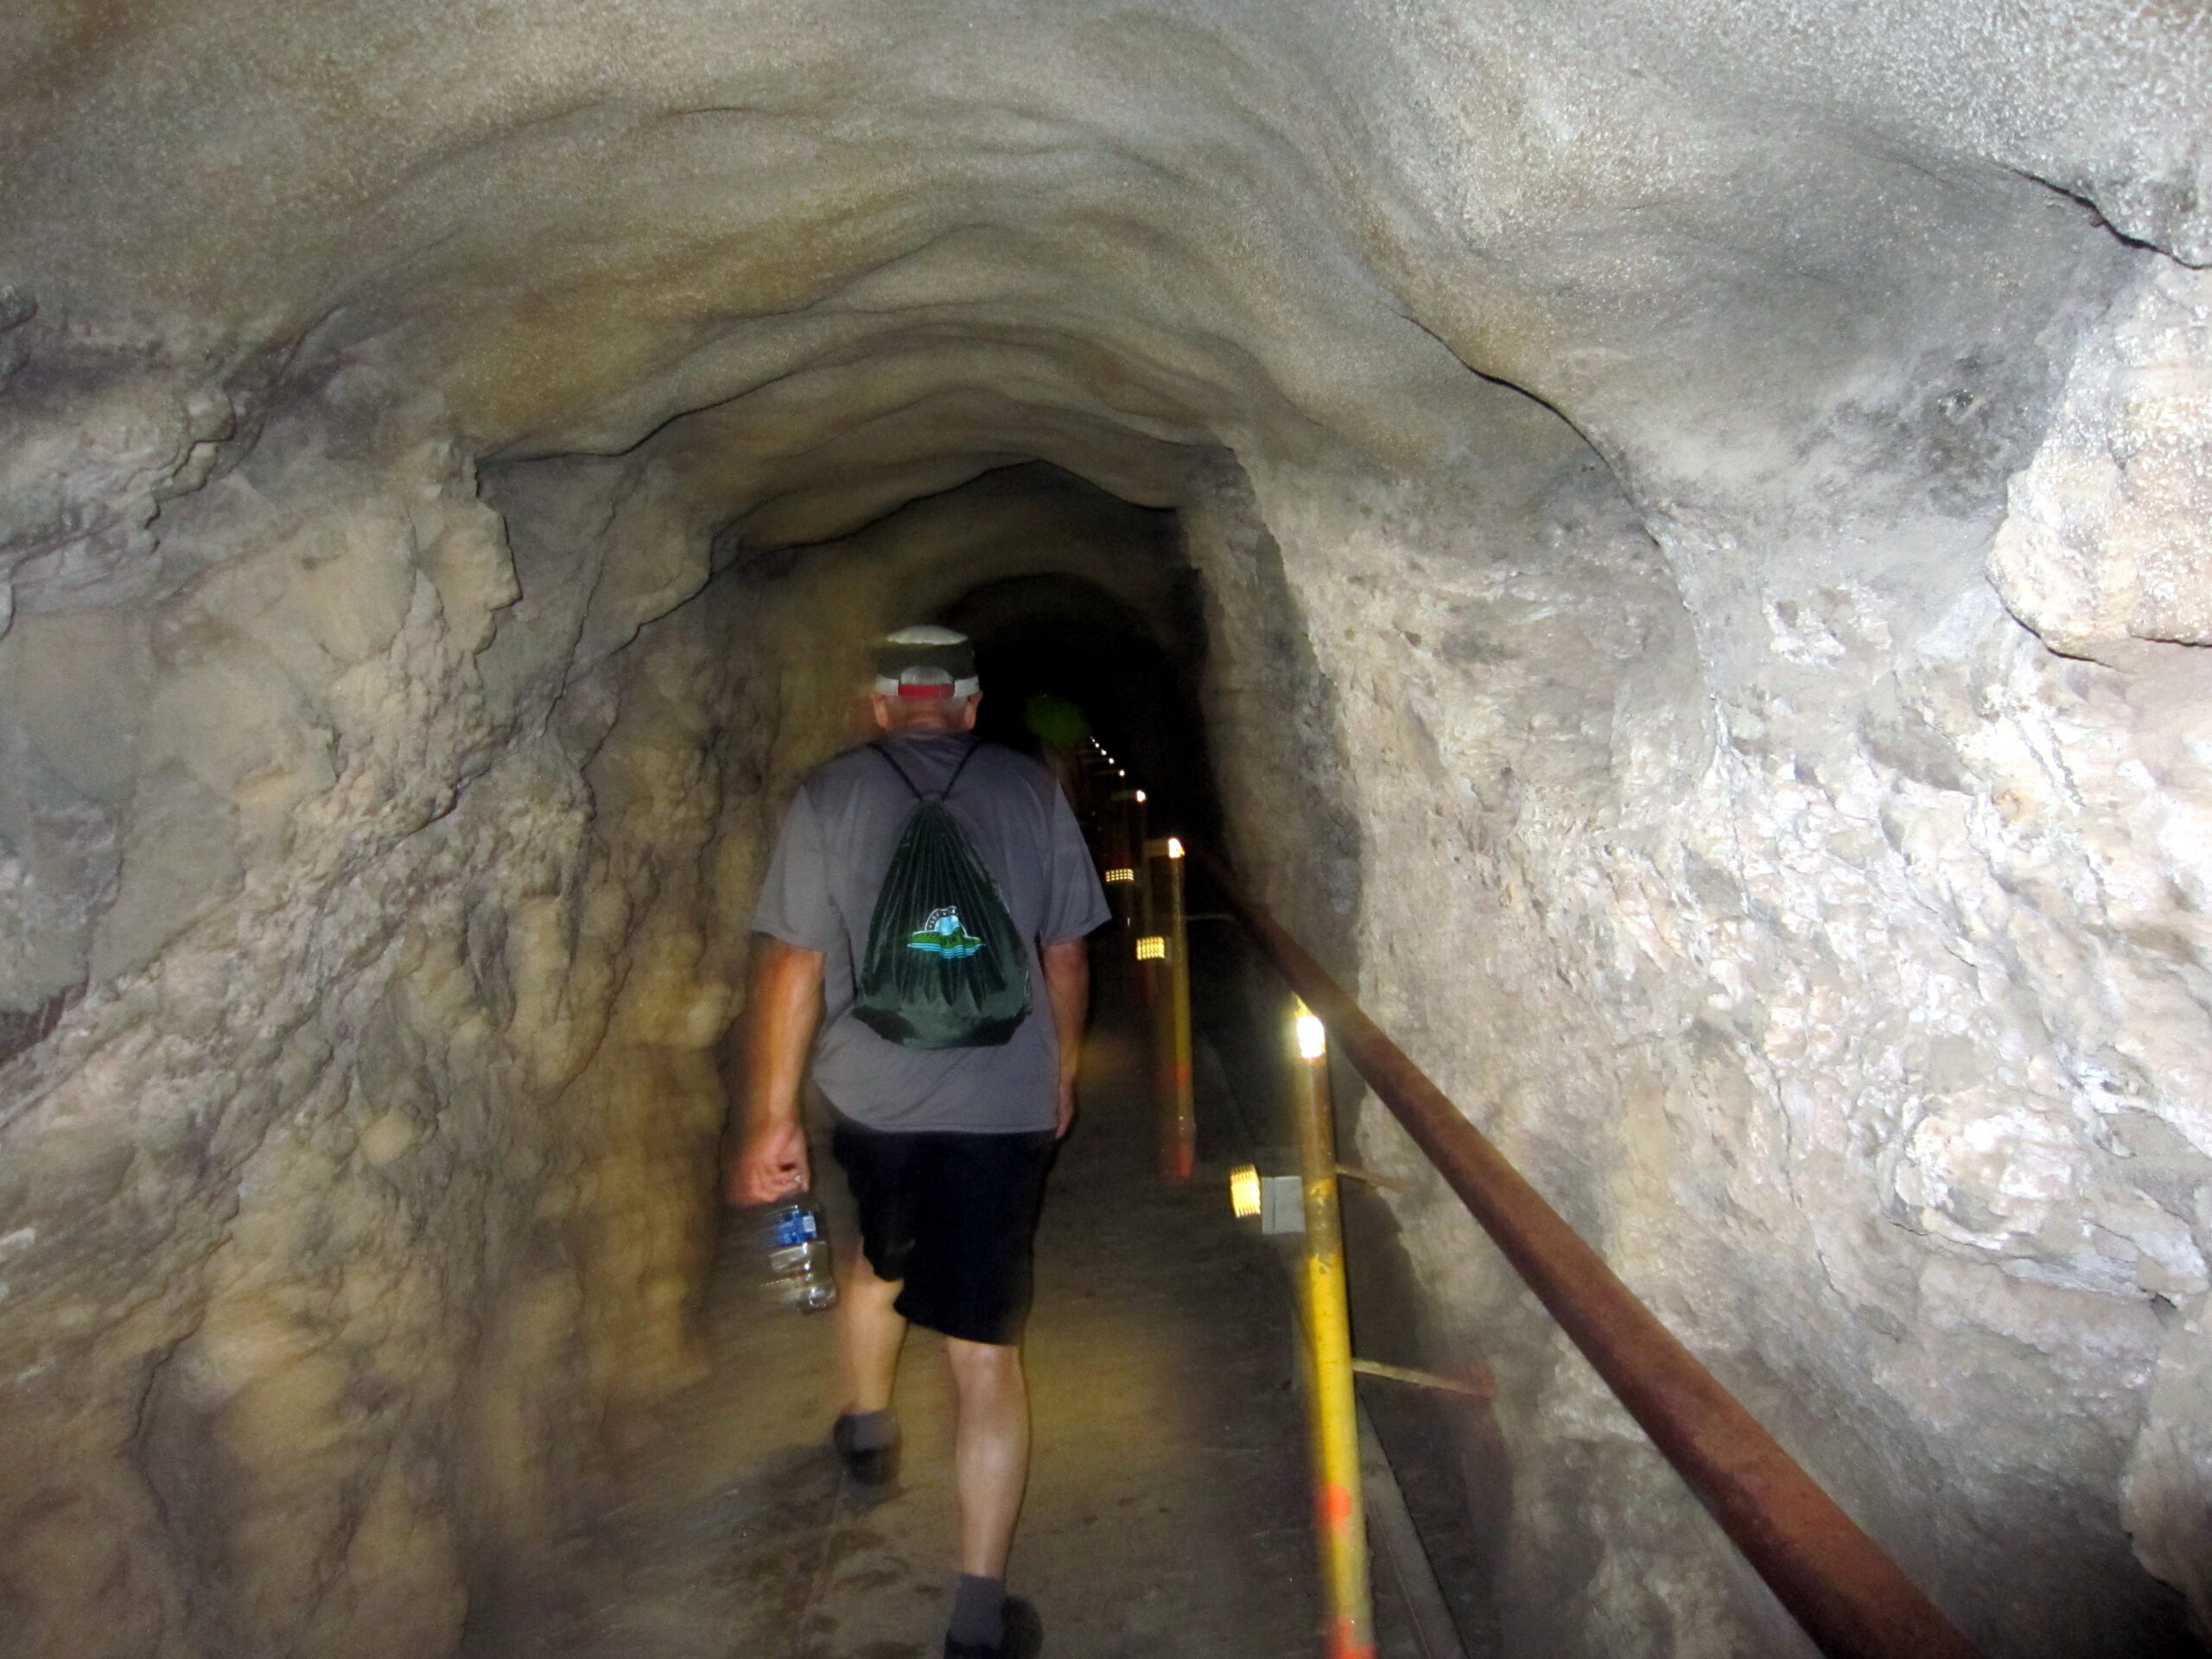 ダイヤモンドヘッド登山 途中のトンネルのように彫り込まれた道を歩く様子を撮影した写真